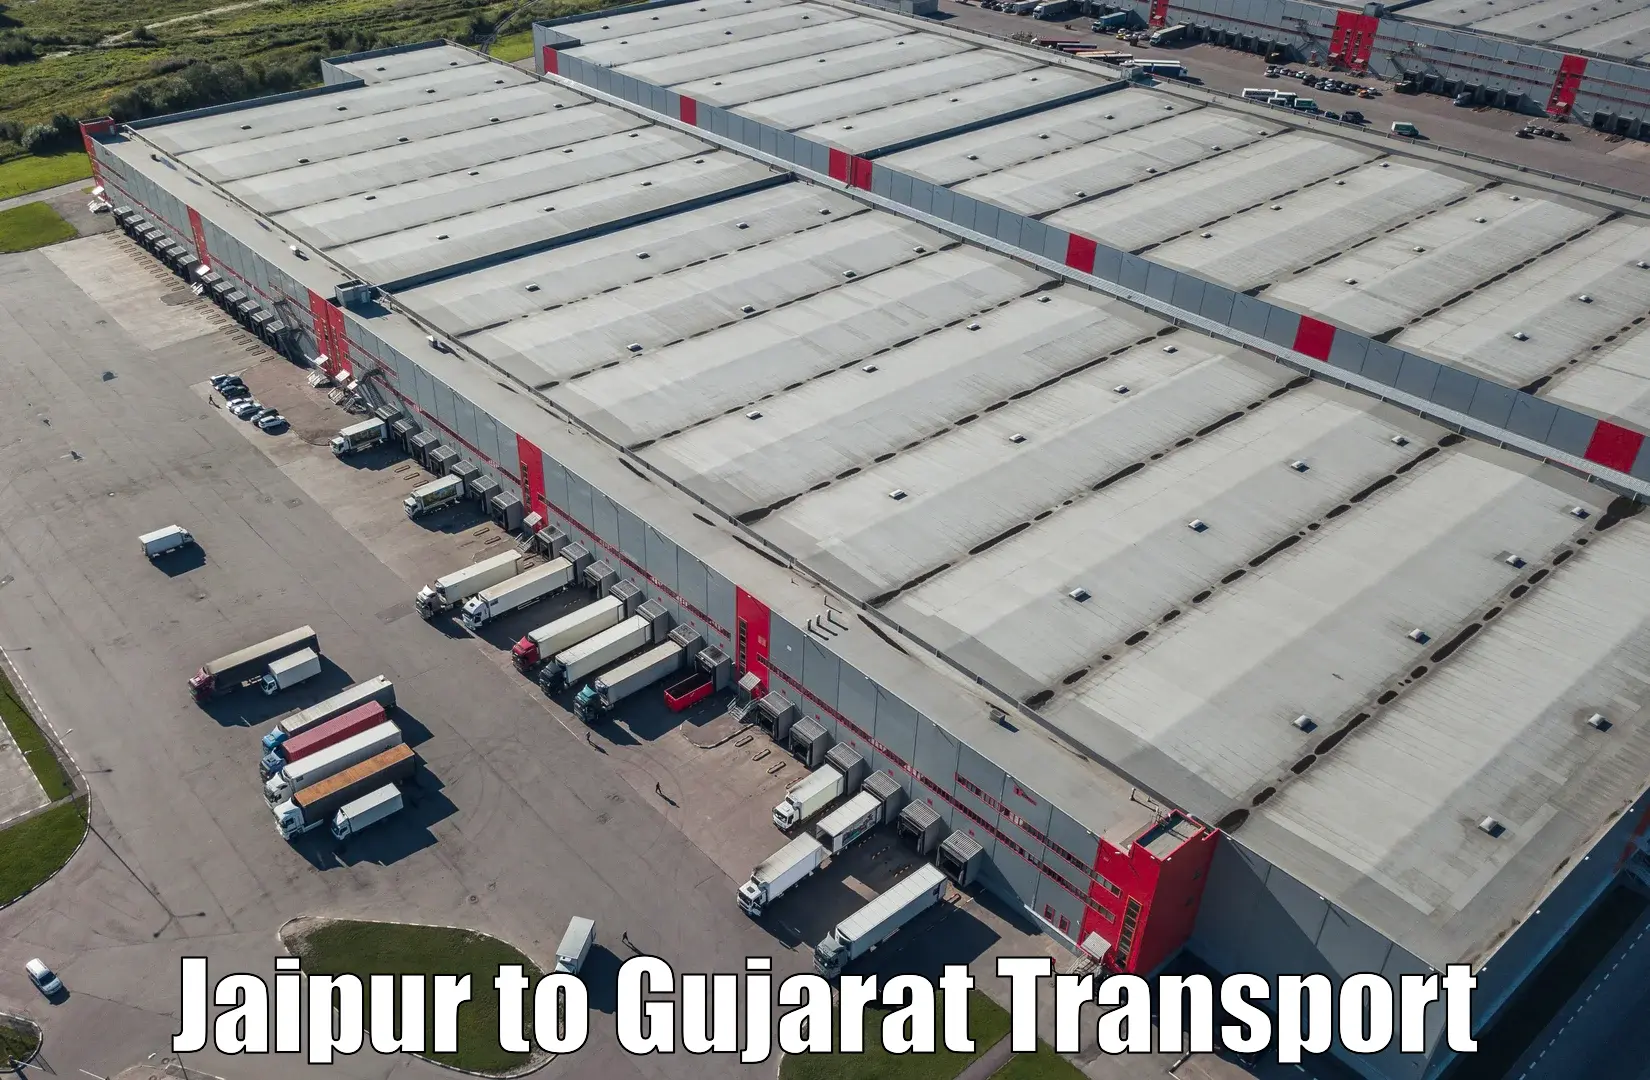 Express transport services Jaipur to IIIT Vadodara